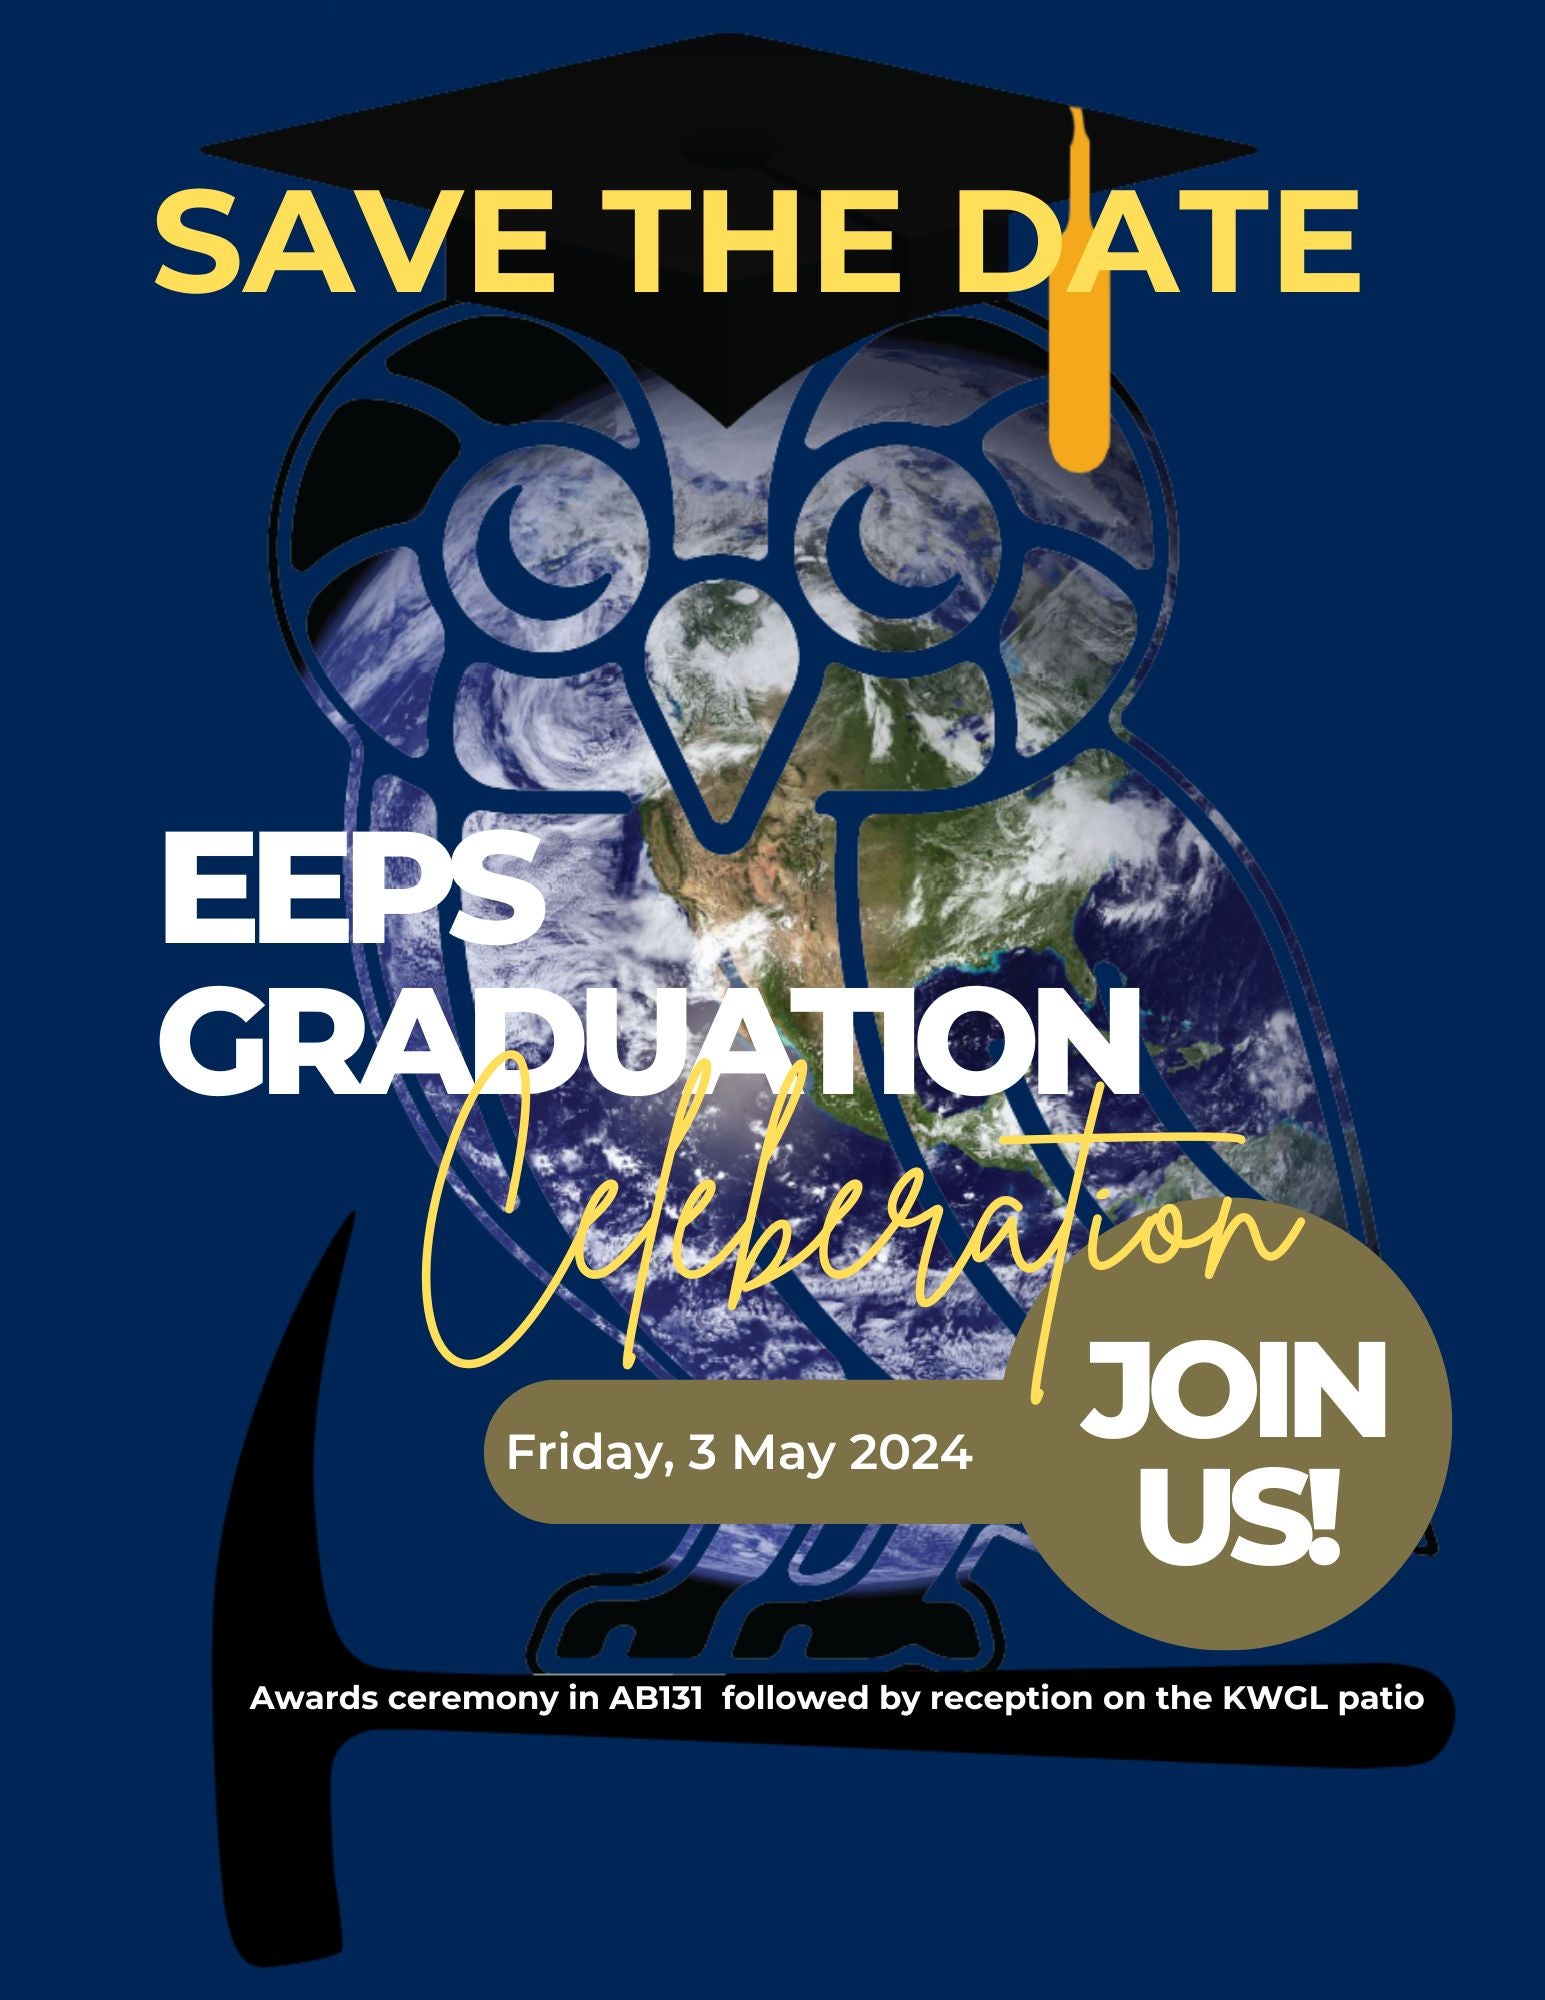 EEPS Spring 2024 Graduation celebration save the date flier